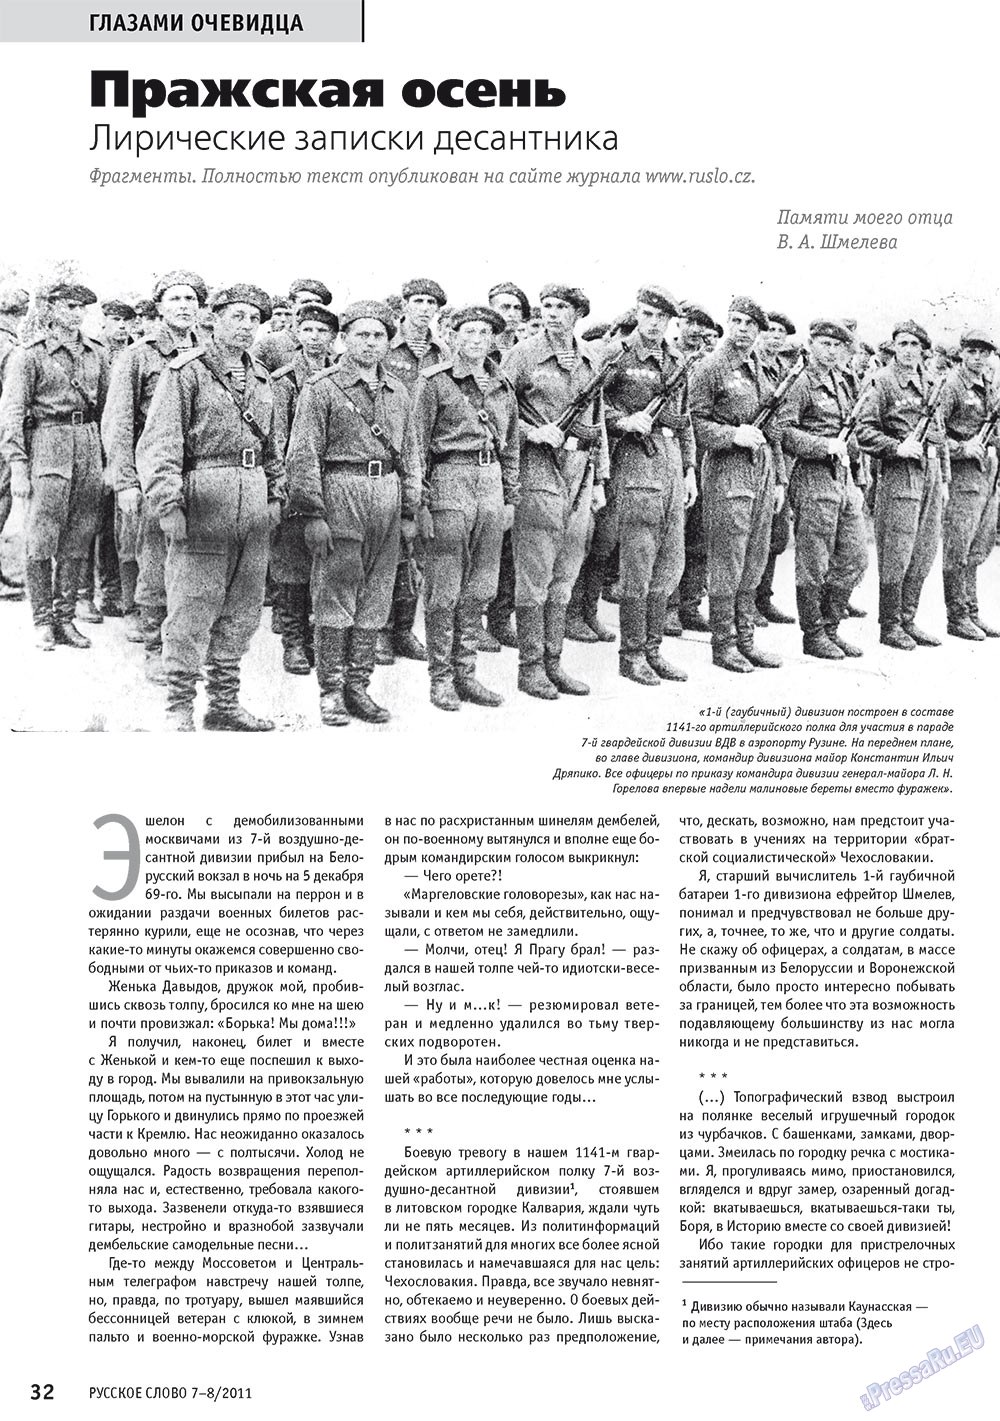 Русское слово, журнал. 2011 №7 стр.34